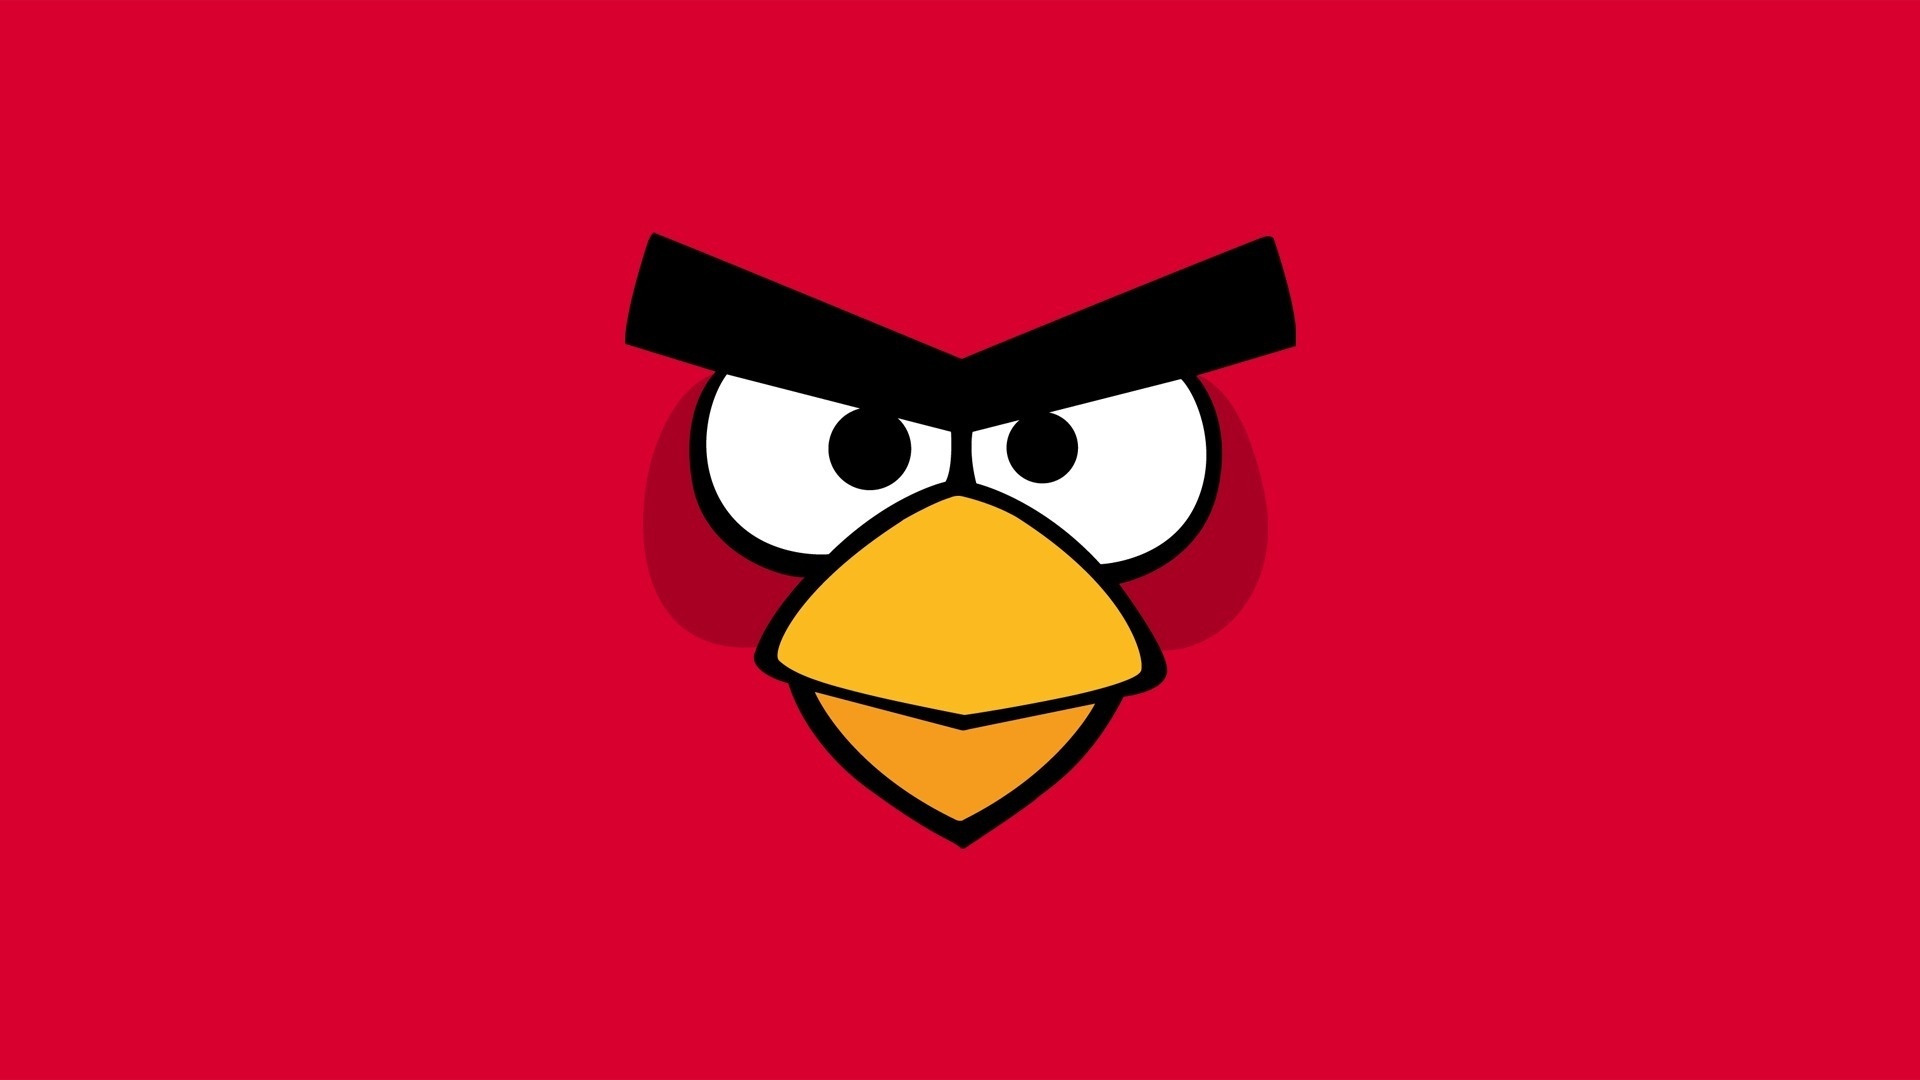 Télécharger des fonds d'écran Angry Birds HD